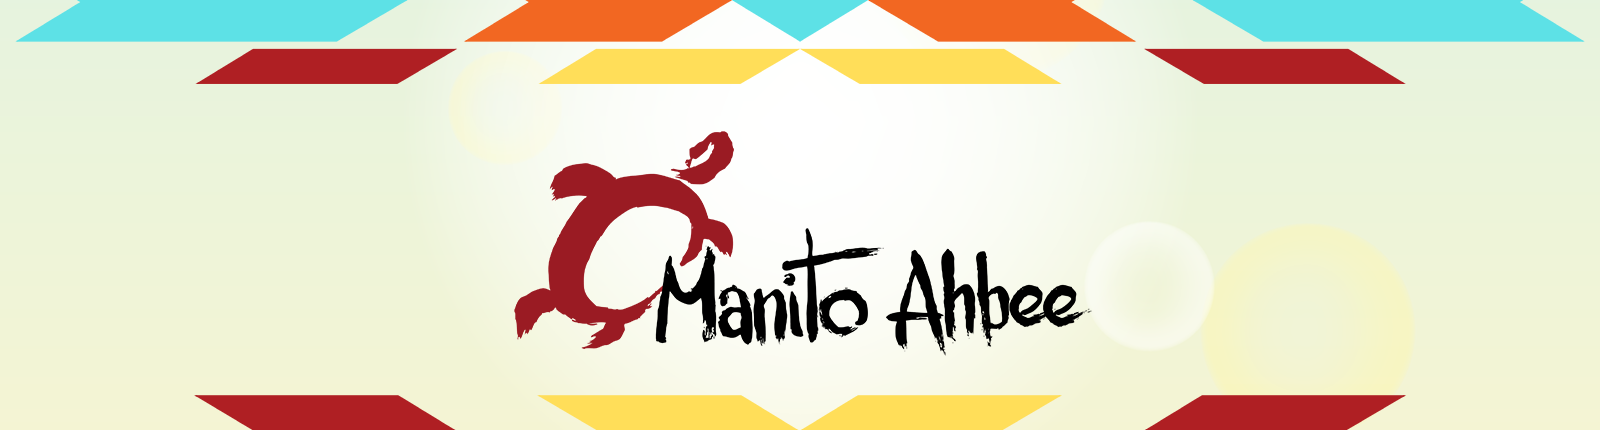 제18회 마니토 아비 축제(the 18th annual Manito Ahbee Festival) - 5월 21일 ~ 22일